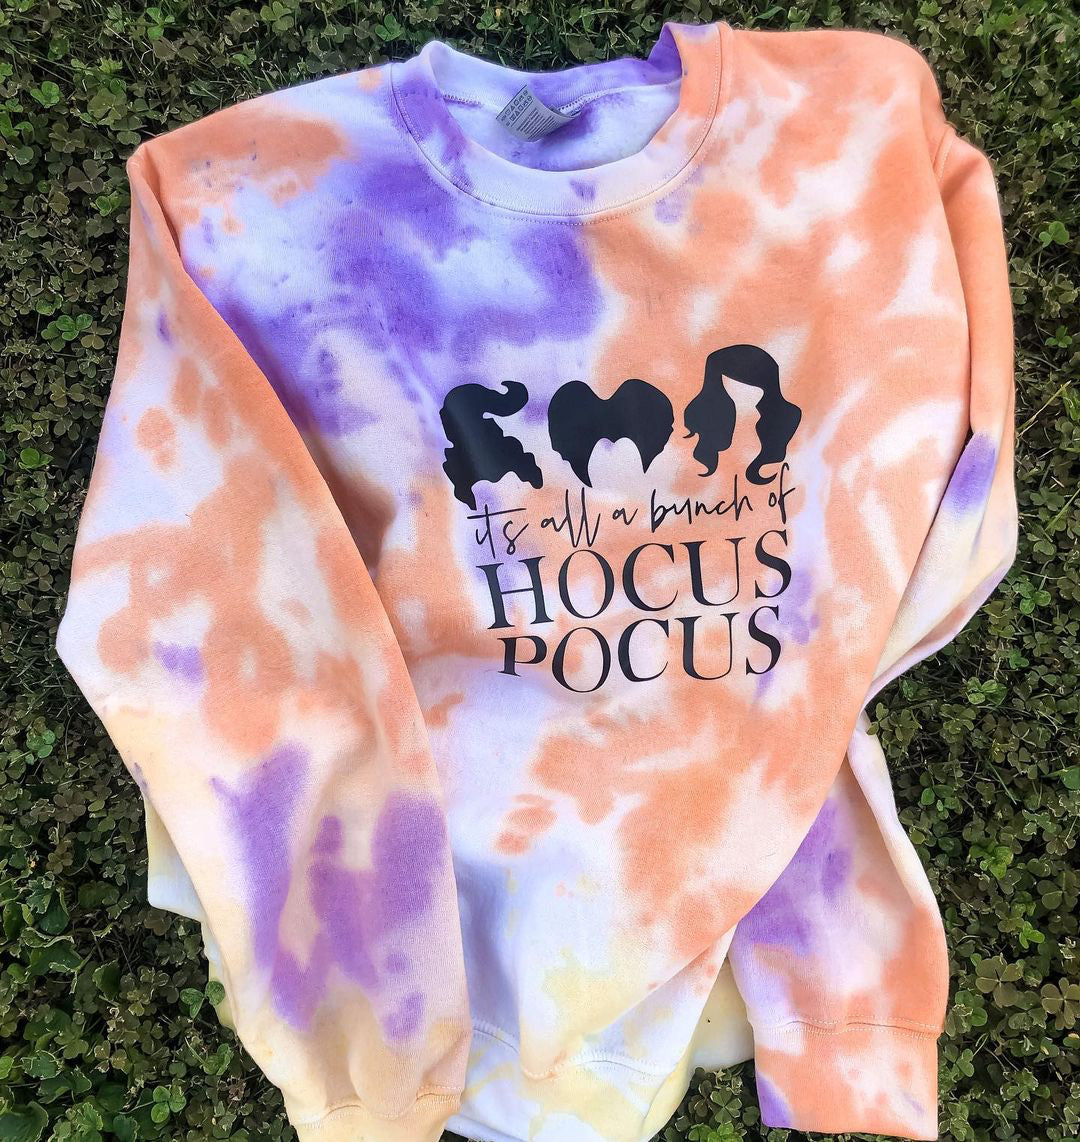 Adult Tie-Dye Crewneck Sweatshirt - It's All a Bunch of Hocus Pocus